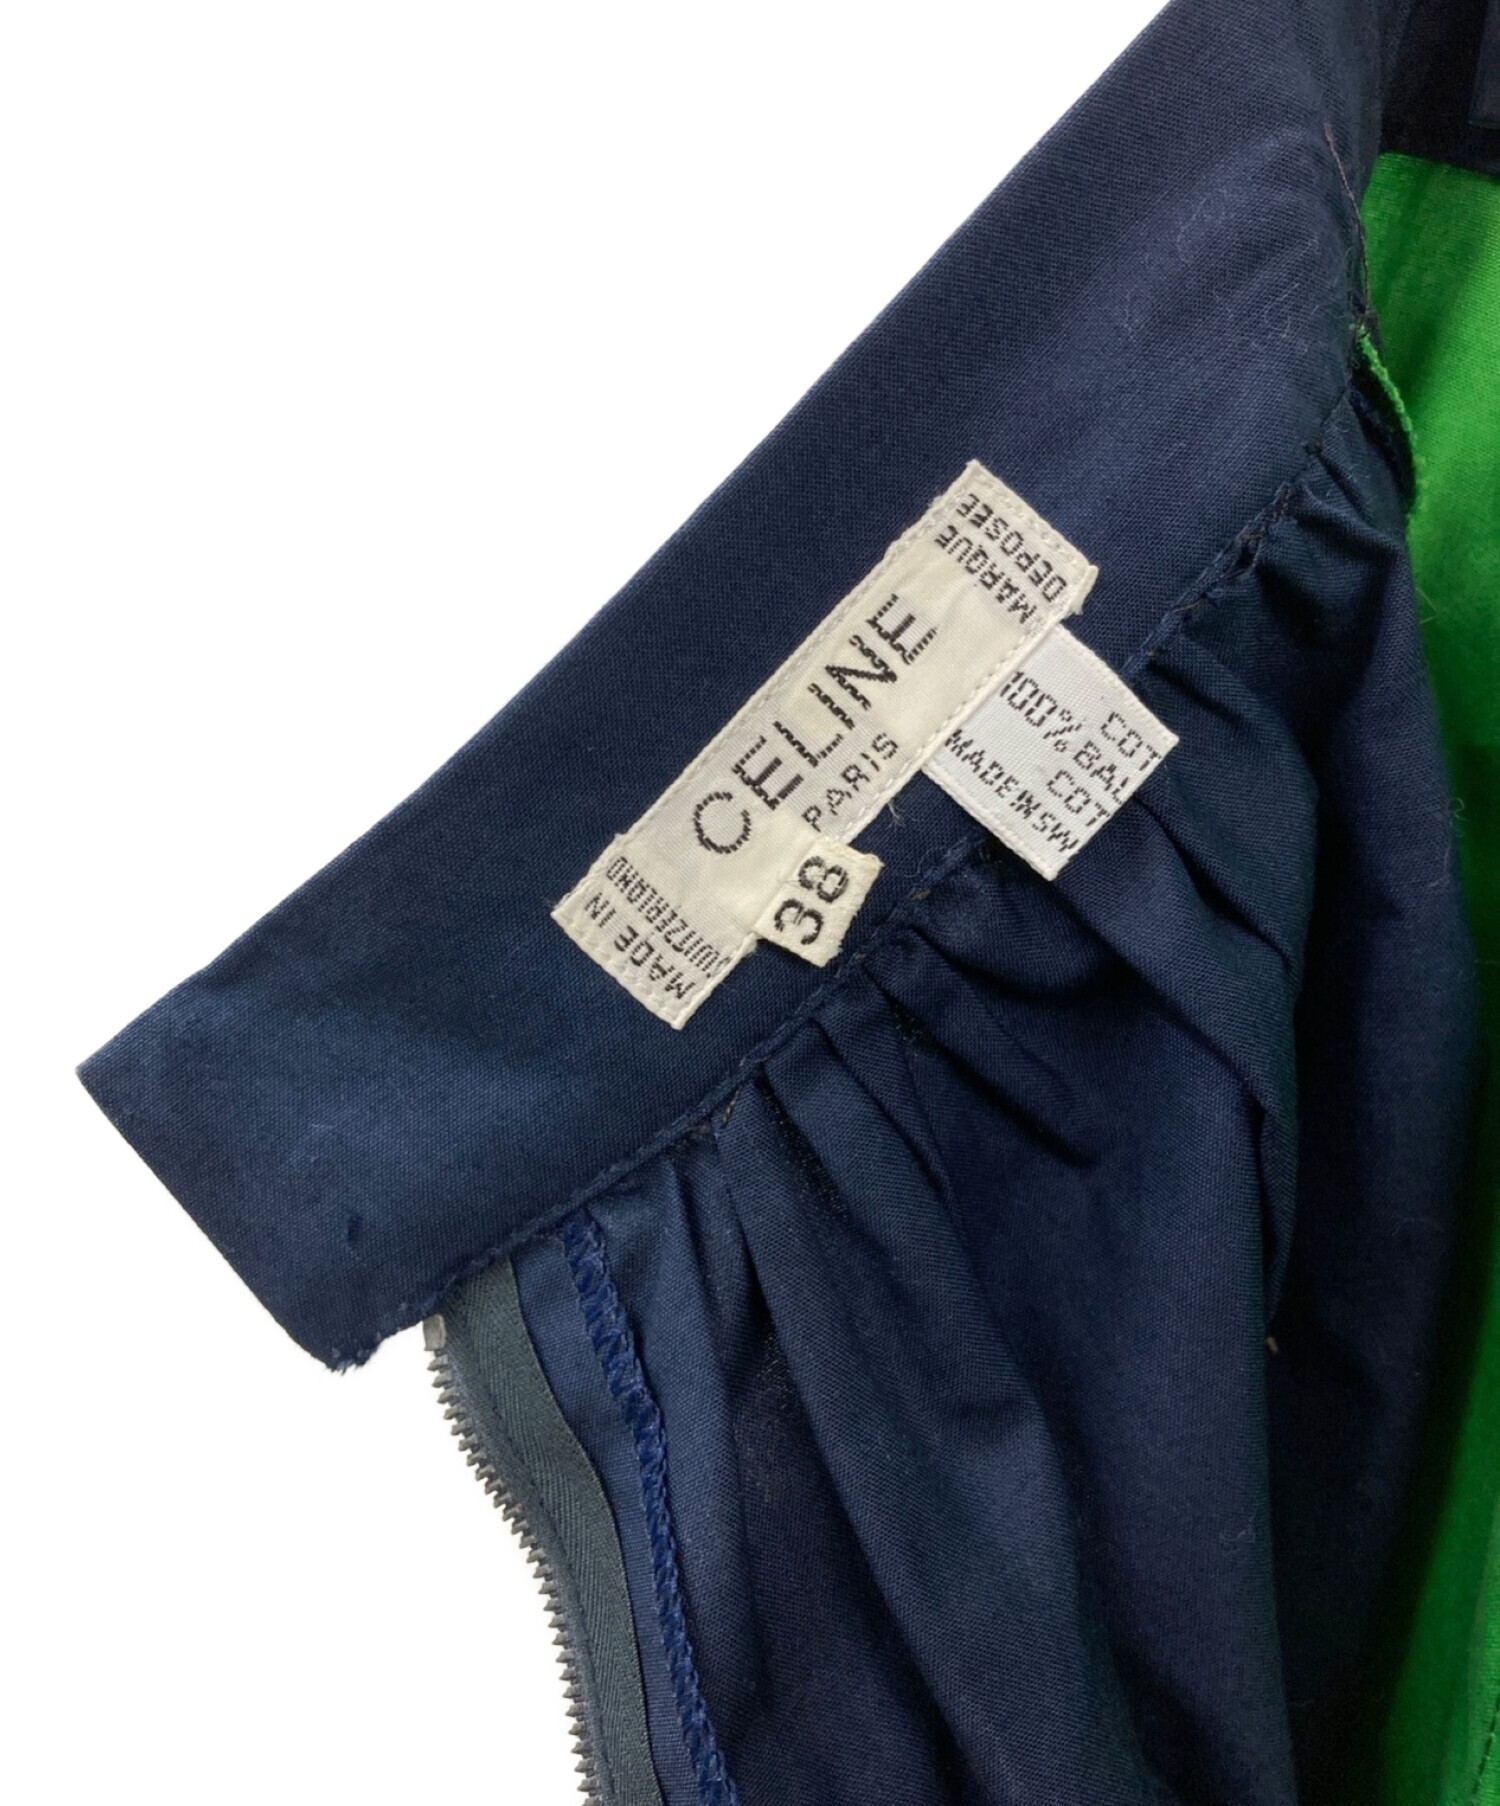 CELINE (セリーヌ) ポケット配色切替スカート ネイビー×グリーン サイズ:36